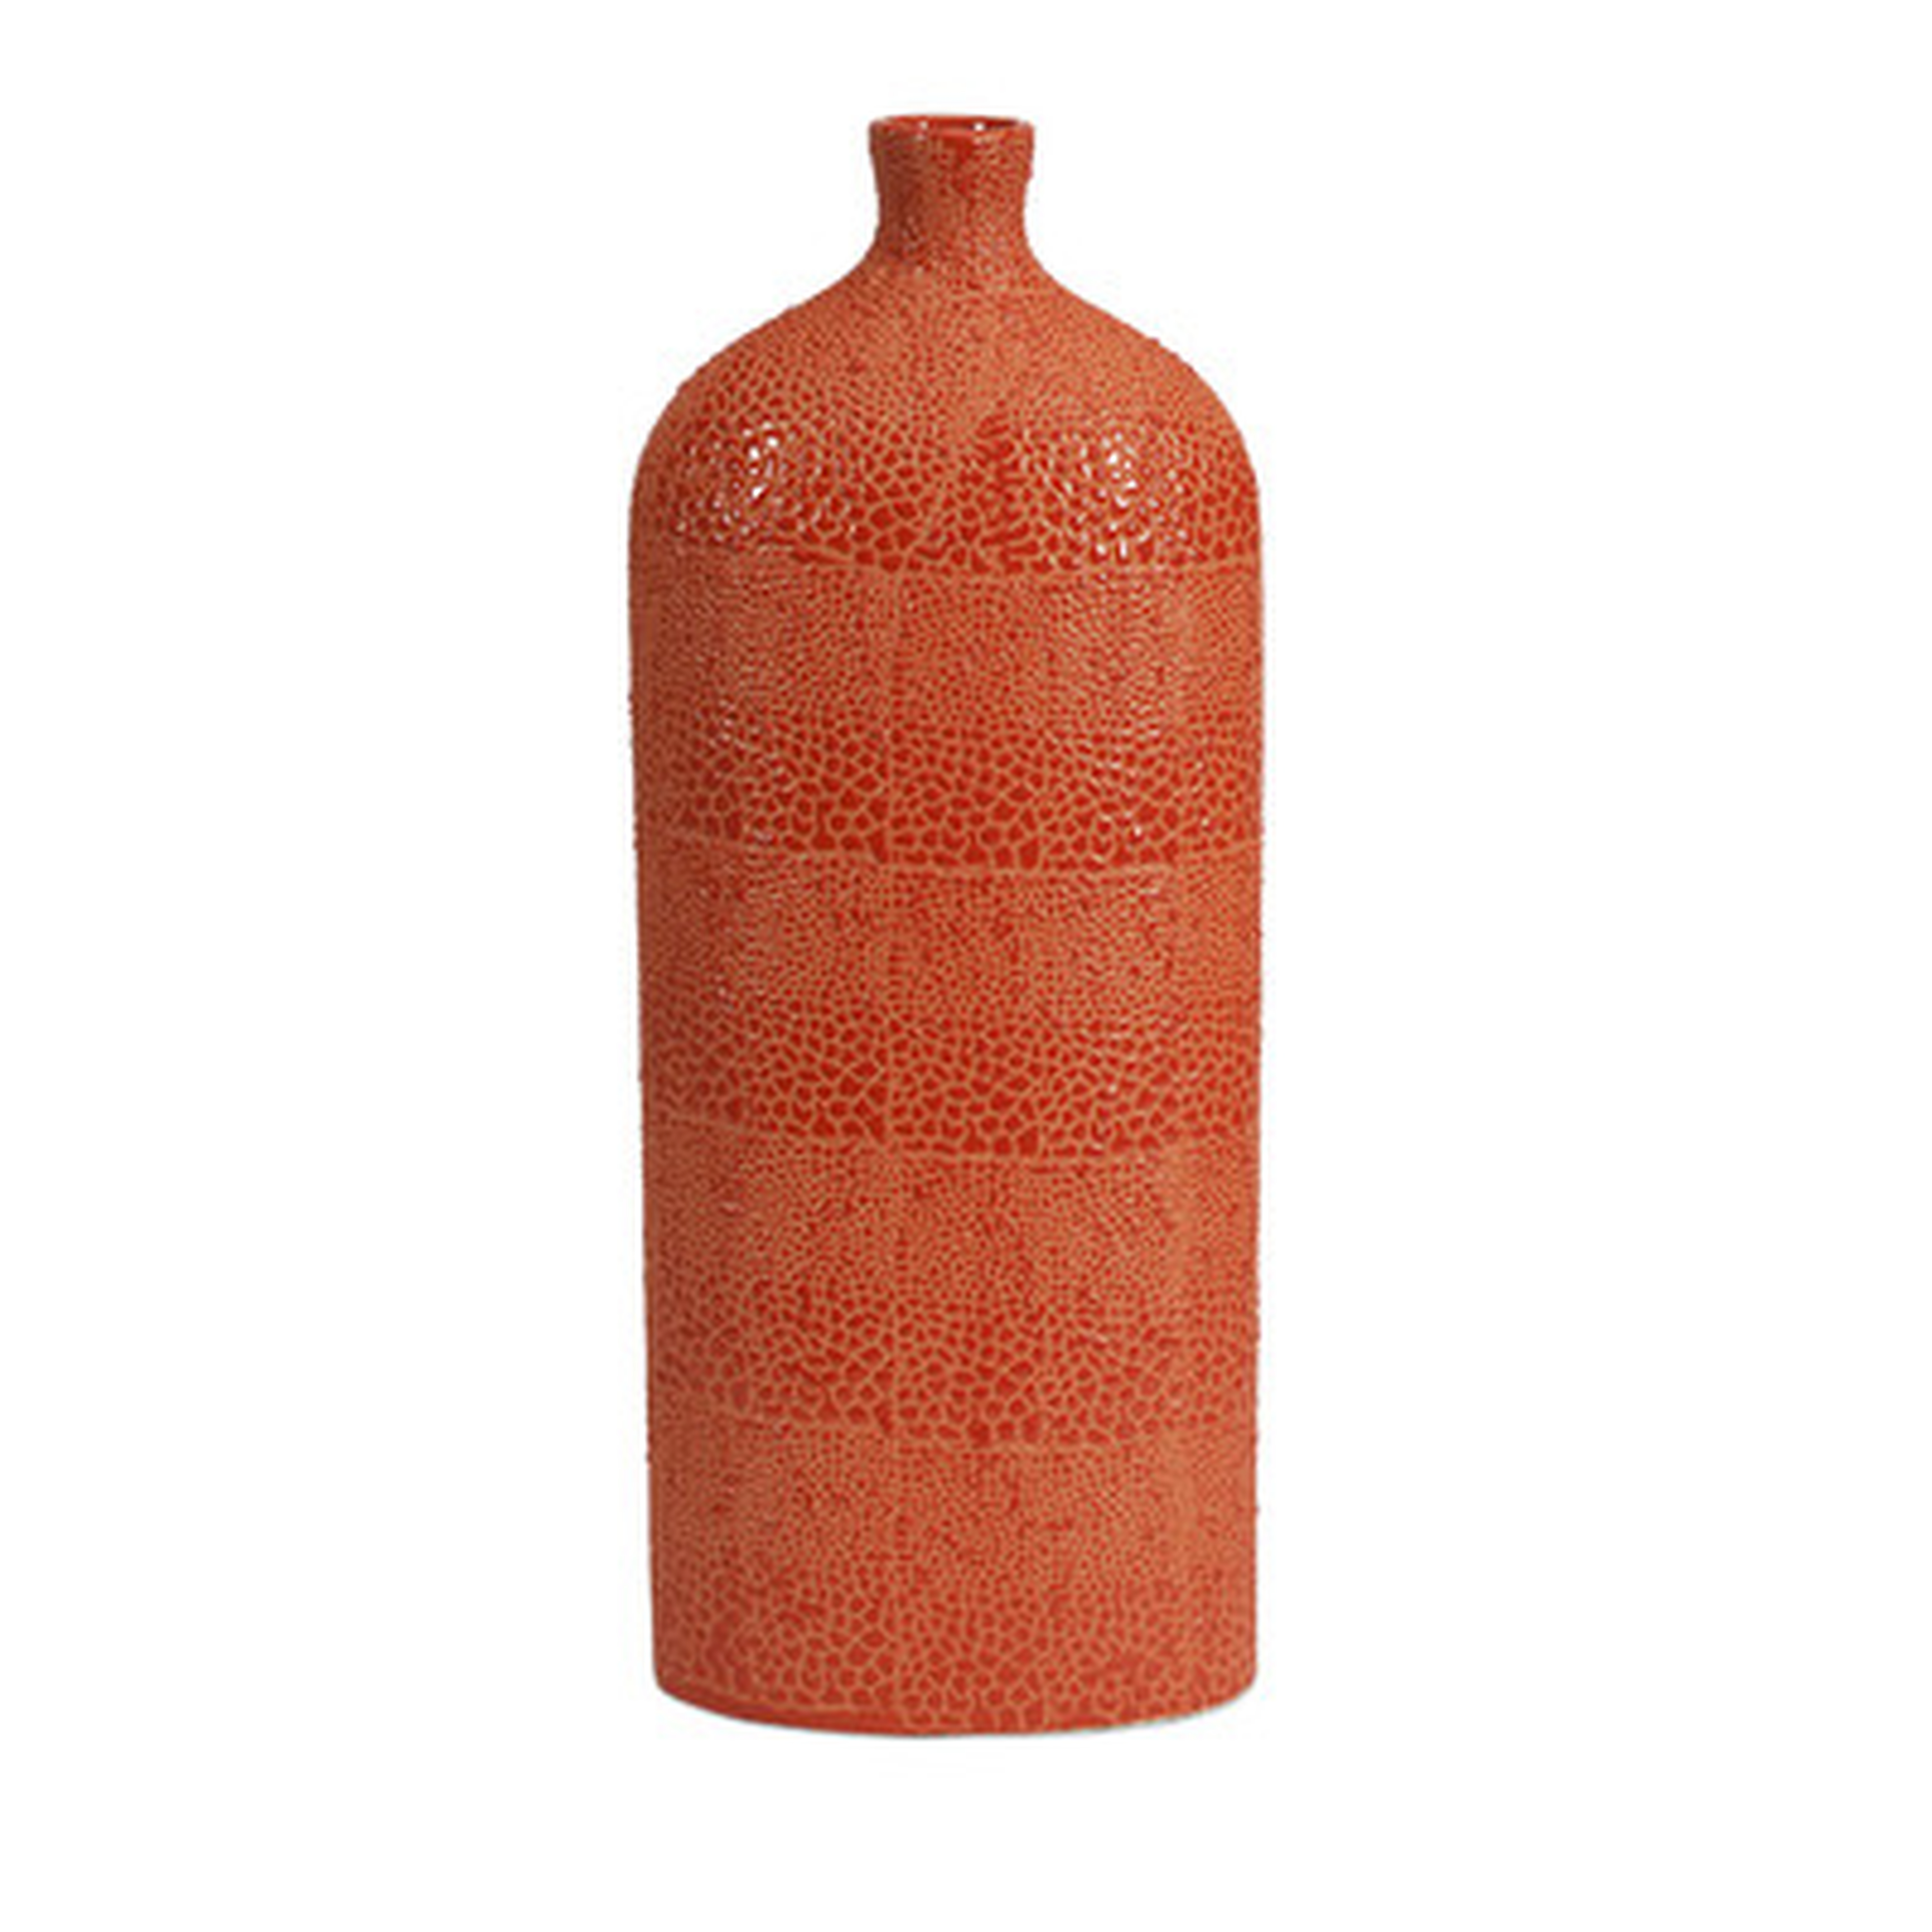 Soren Large Vase - AllModern